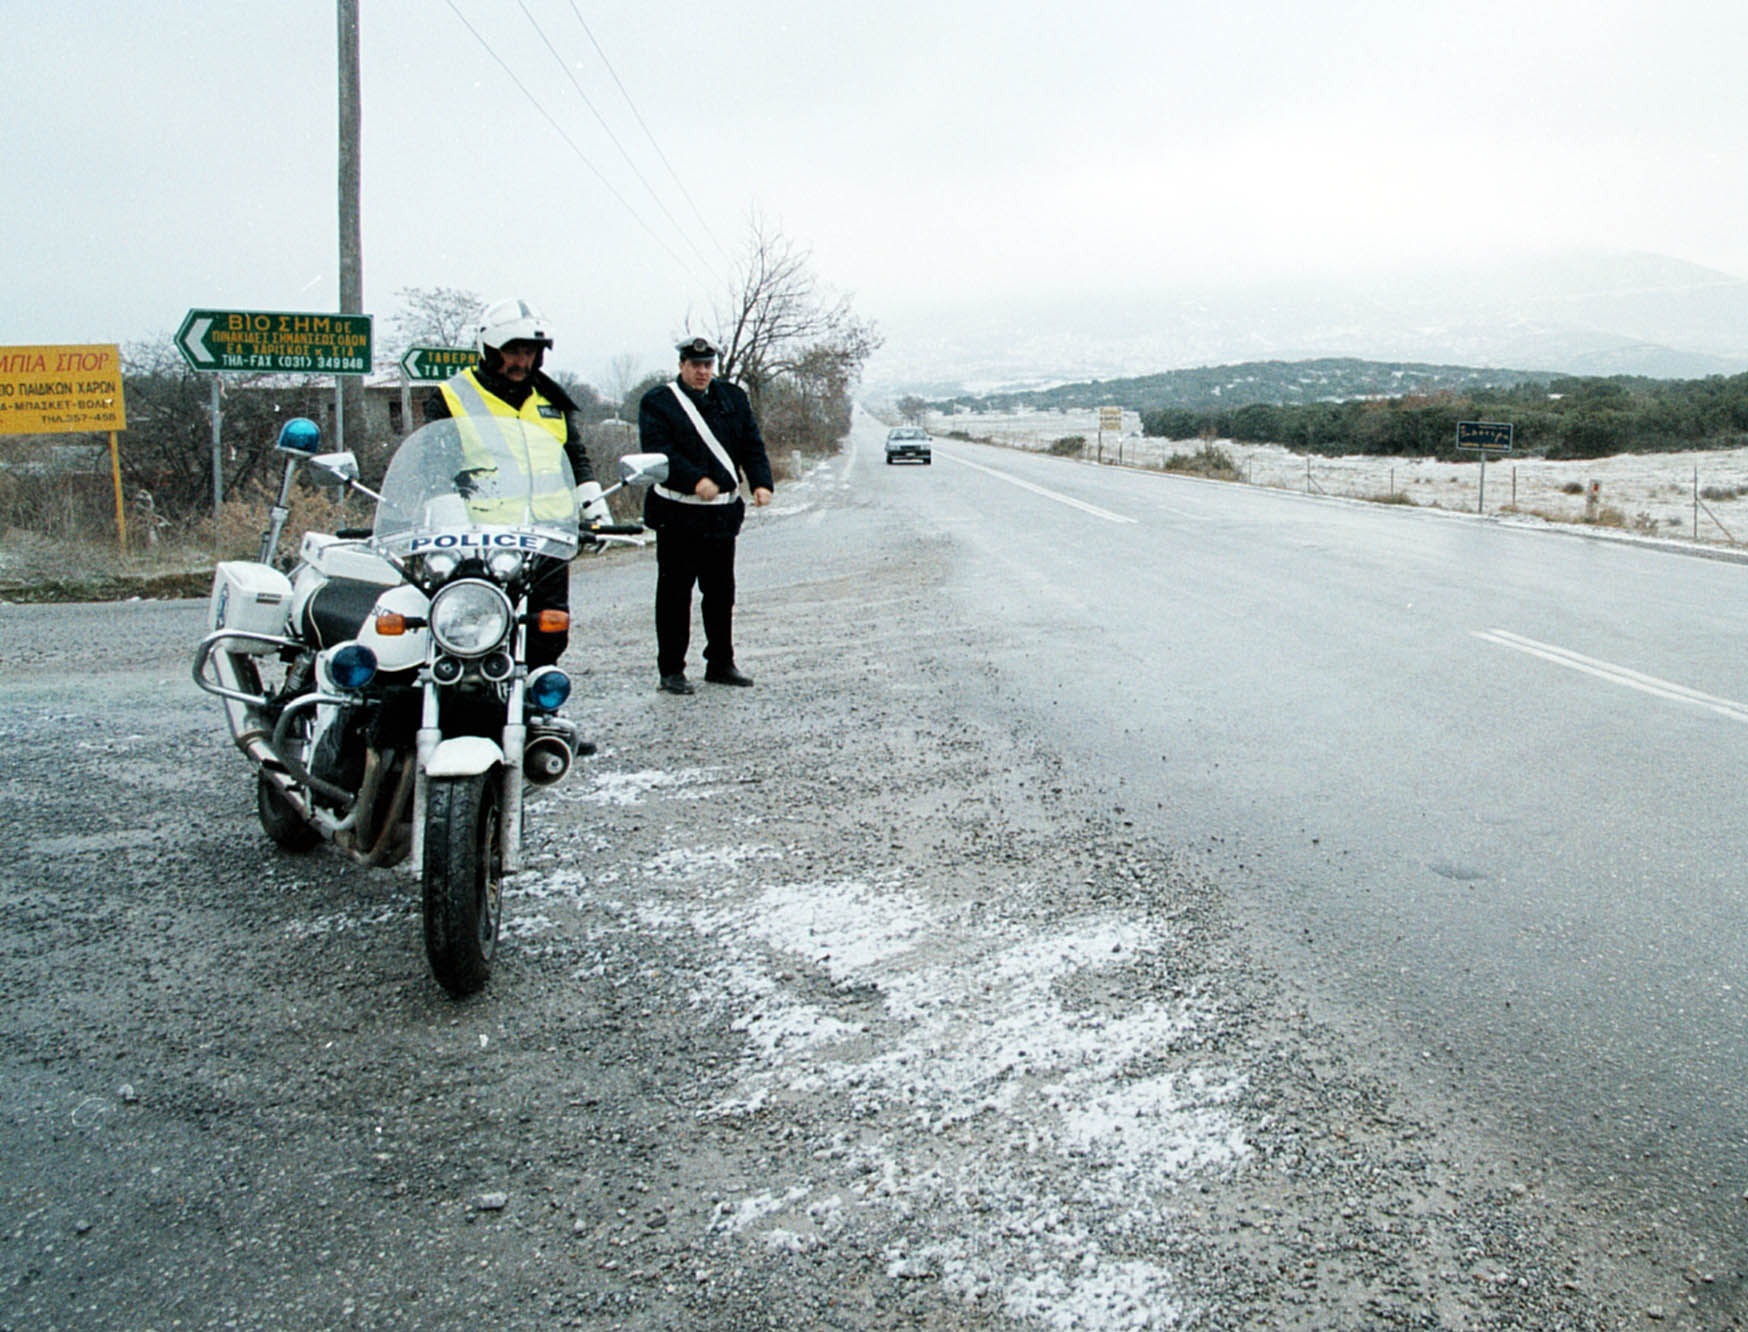 Ζάκυνθος: Ποινή φυλάκισης για τον αστυφύλακα που ζητούσε χρήματα για να σβήνει κλήσεις